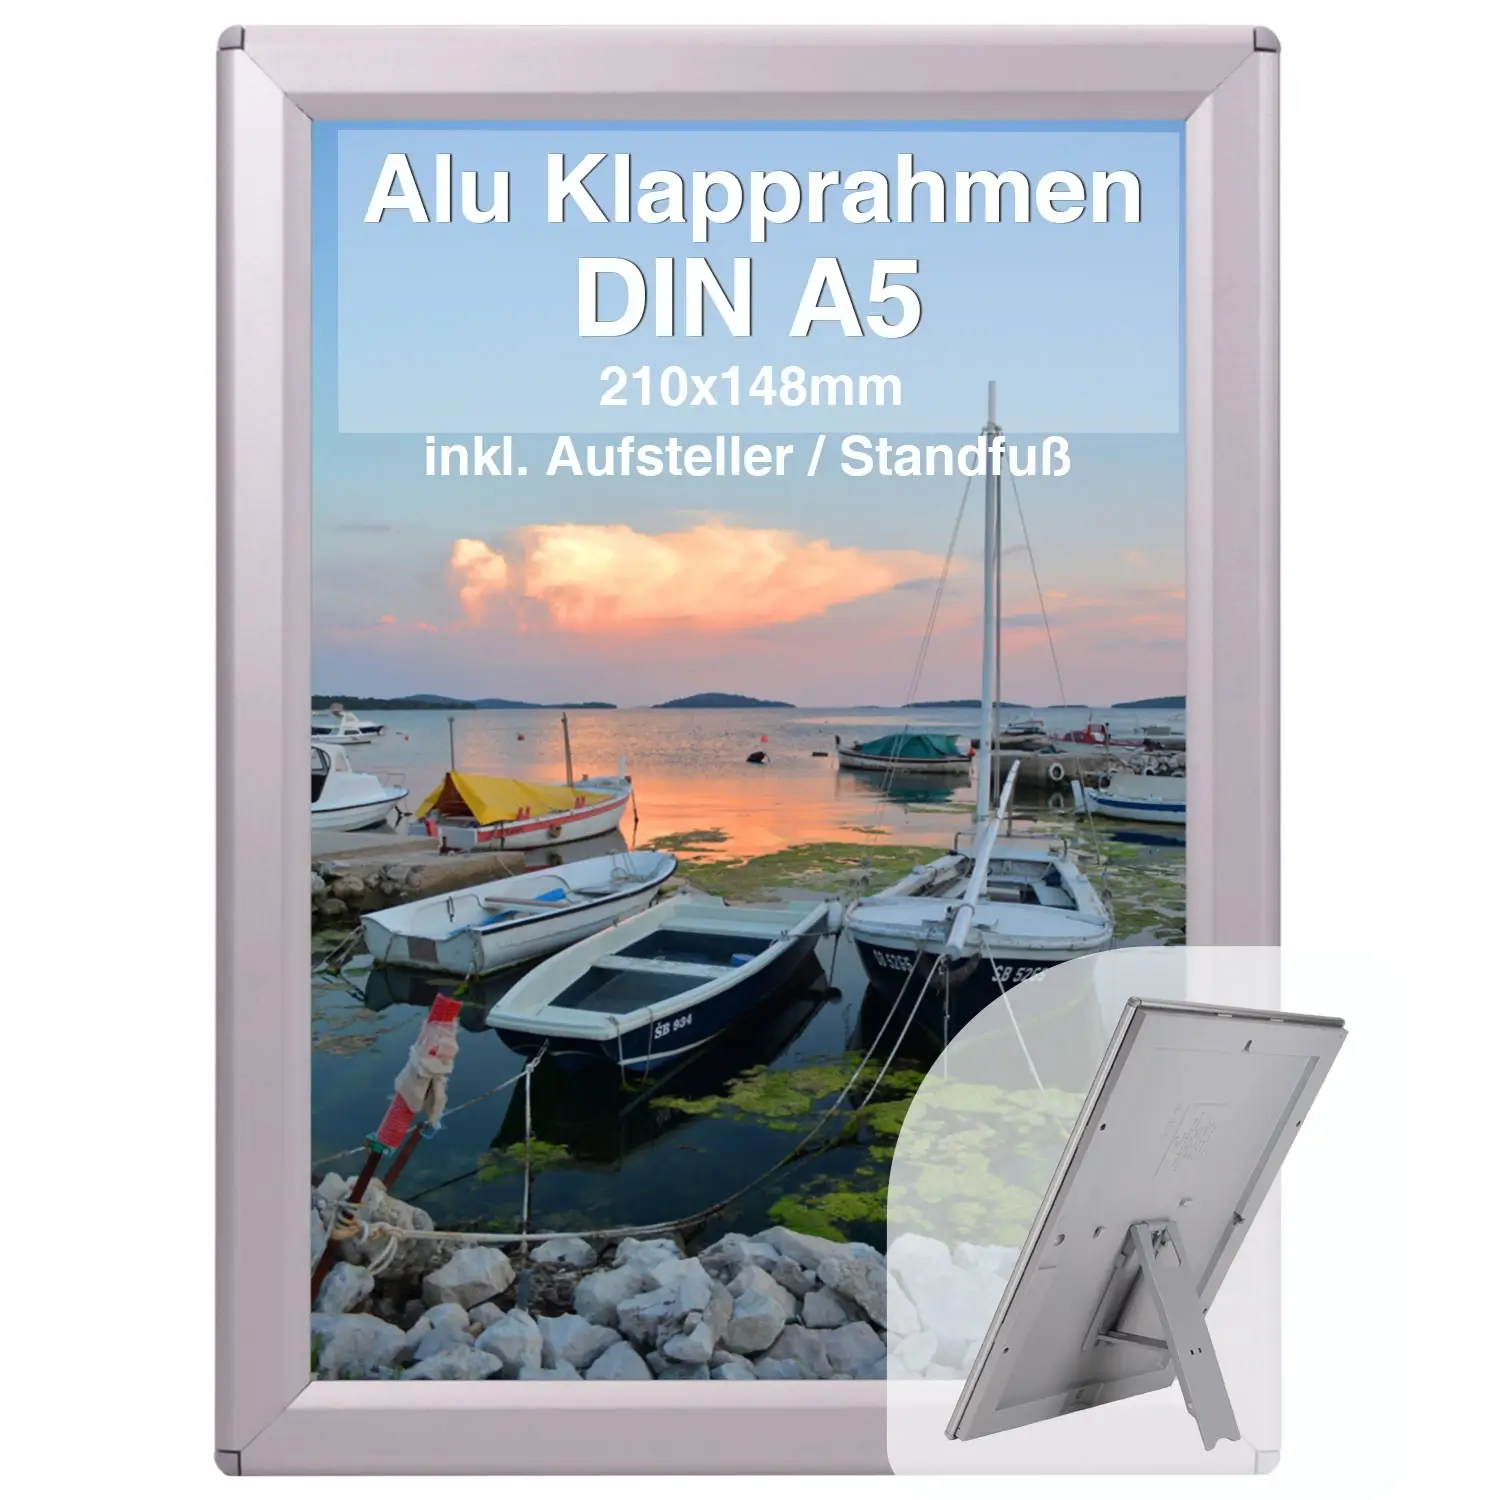 Alu Klapprahmen Din A5